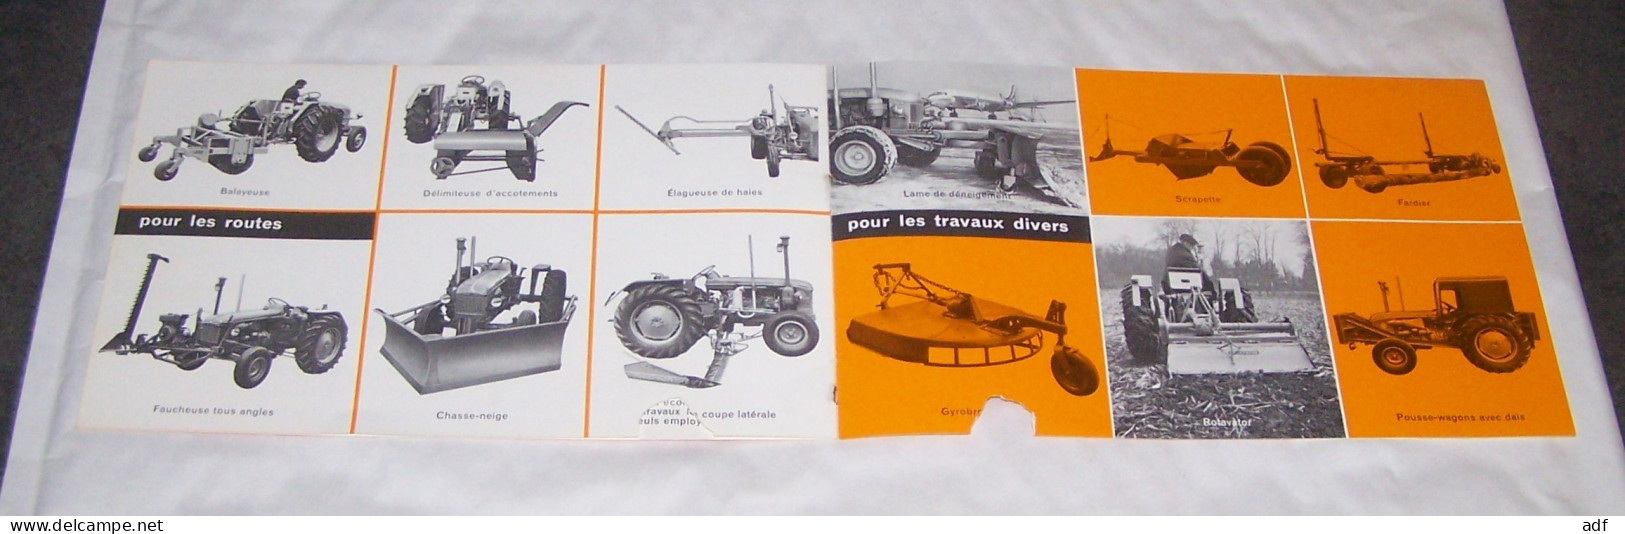 LIVRET PUB PUBLICITAIRE TRACTEURS RENAULT, TRACTEUR RENAULT P70 P 70, TRAVAUX PUBLICS PONTS ET CHAUSSEES - Tracteurs